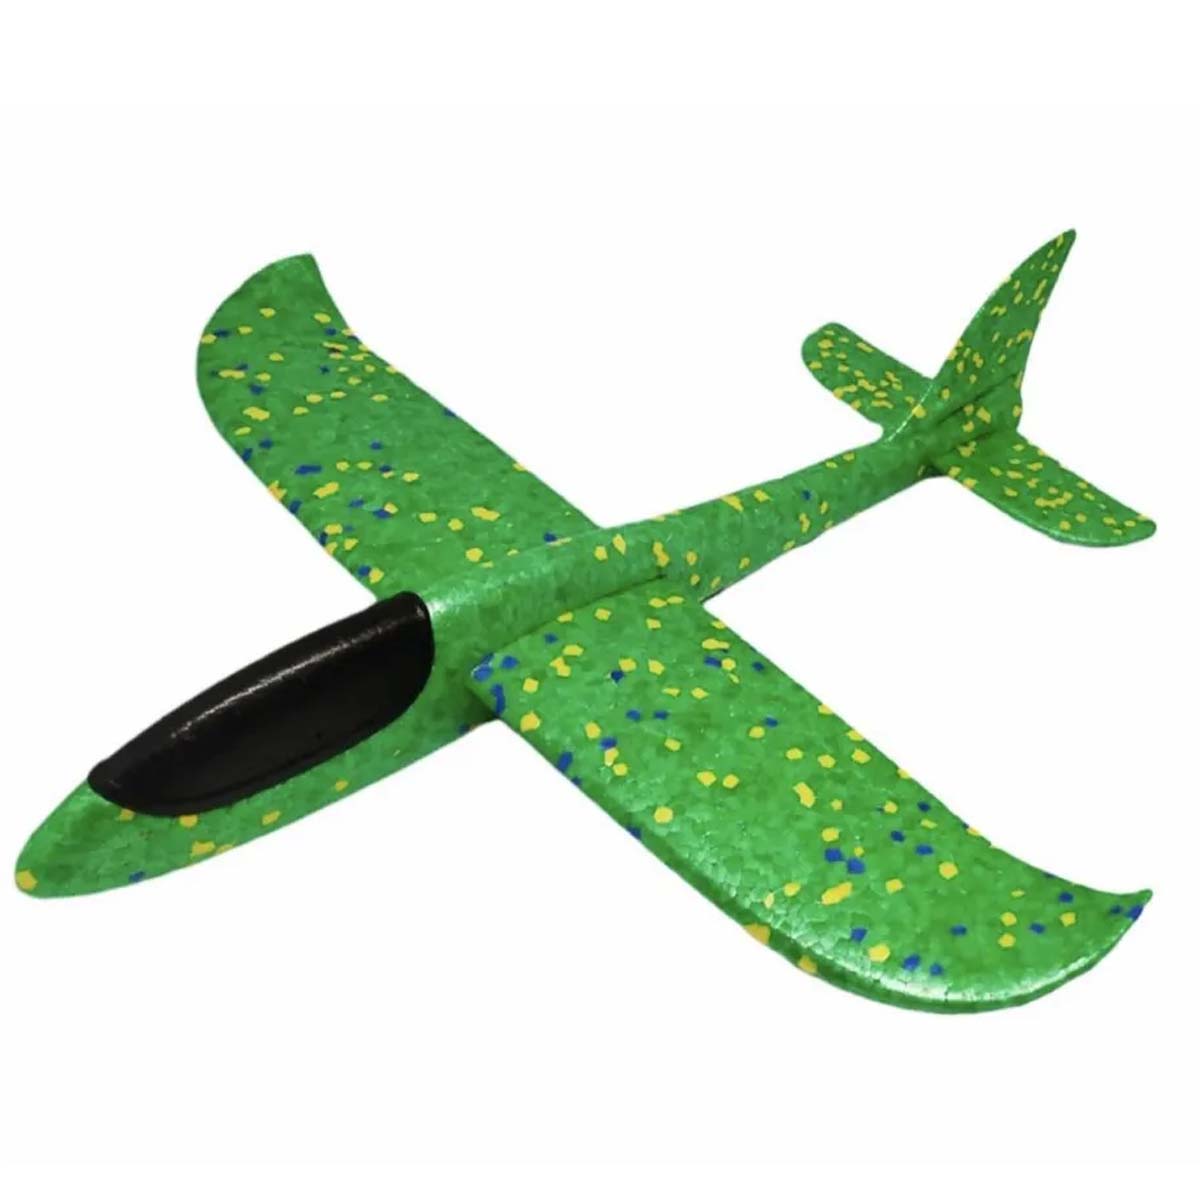 Метательный самолет из пенопласта, 45 см, цвет зеленый